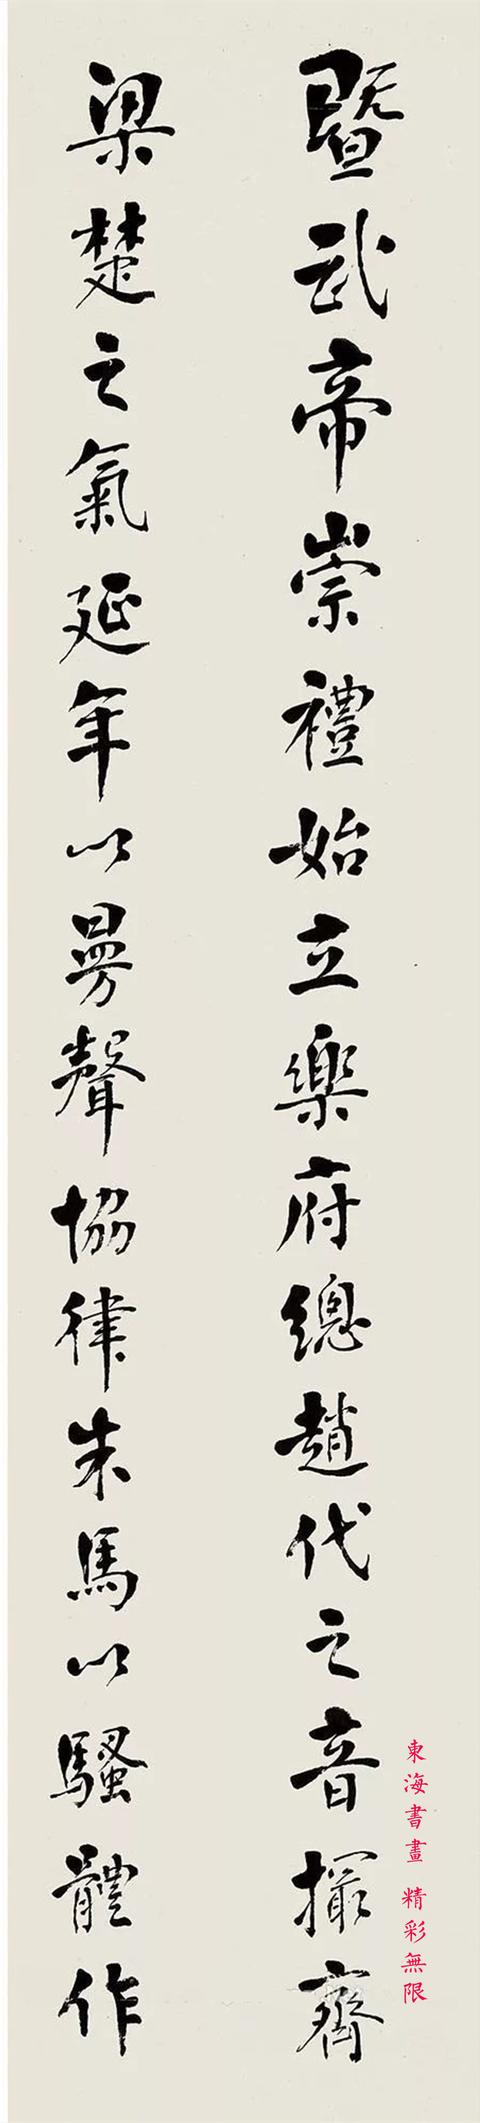 吴道镕 1933年作 行书 四屏镜片